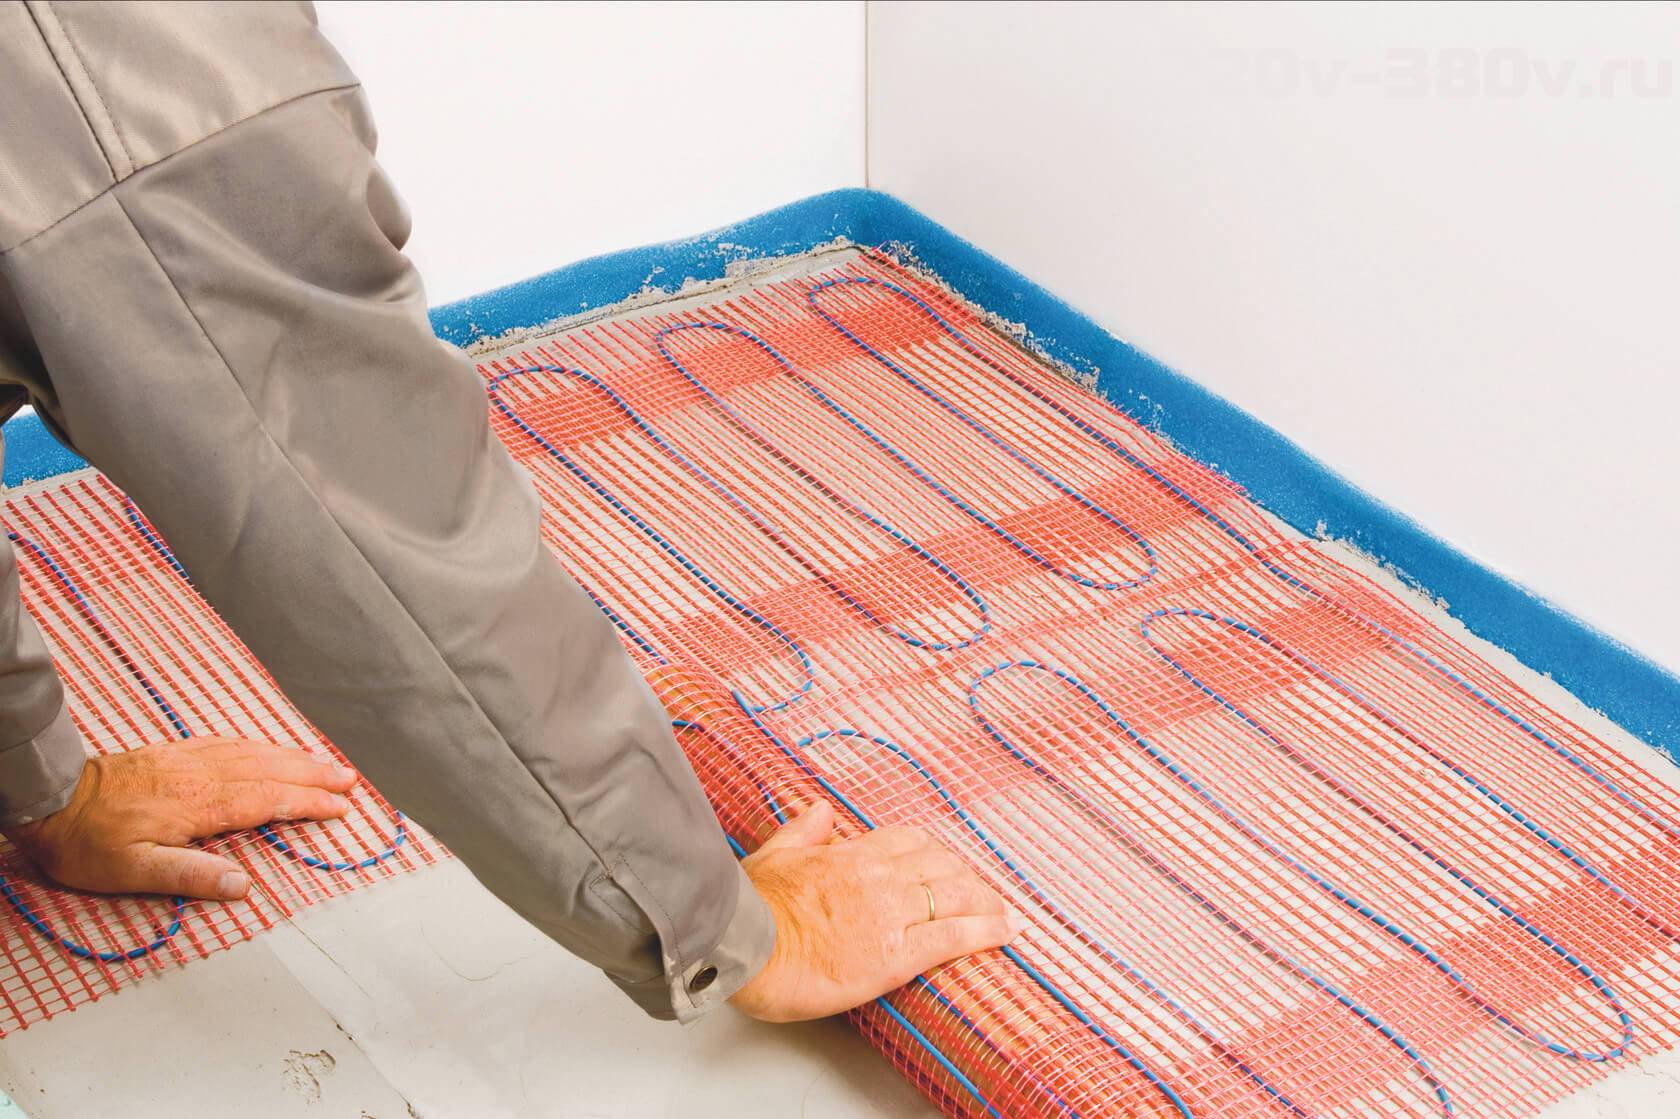 Электрический теплый пол – эффективный обогрев под плитку